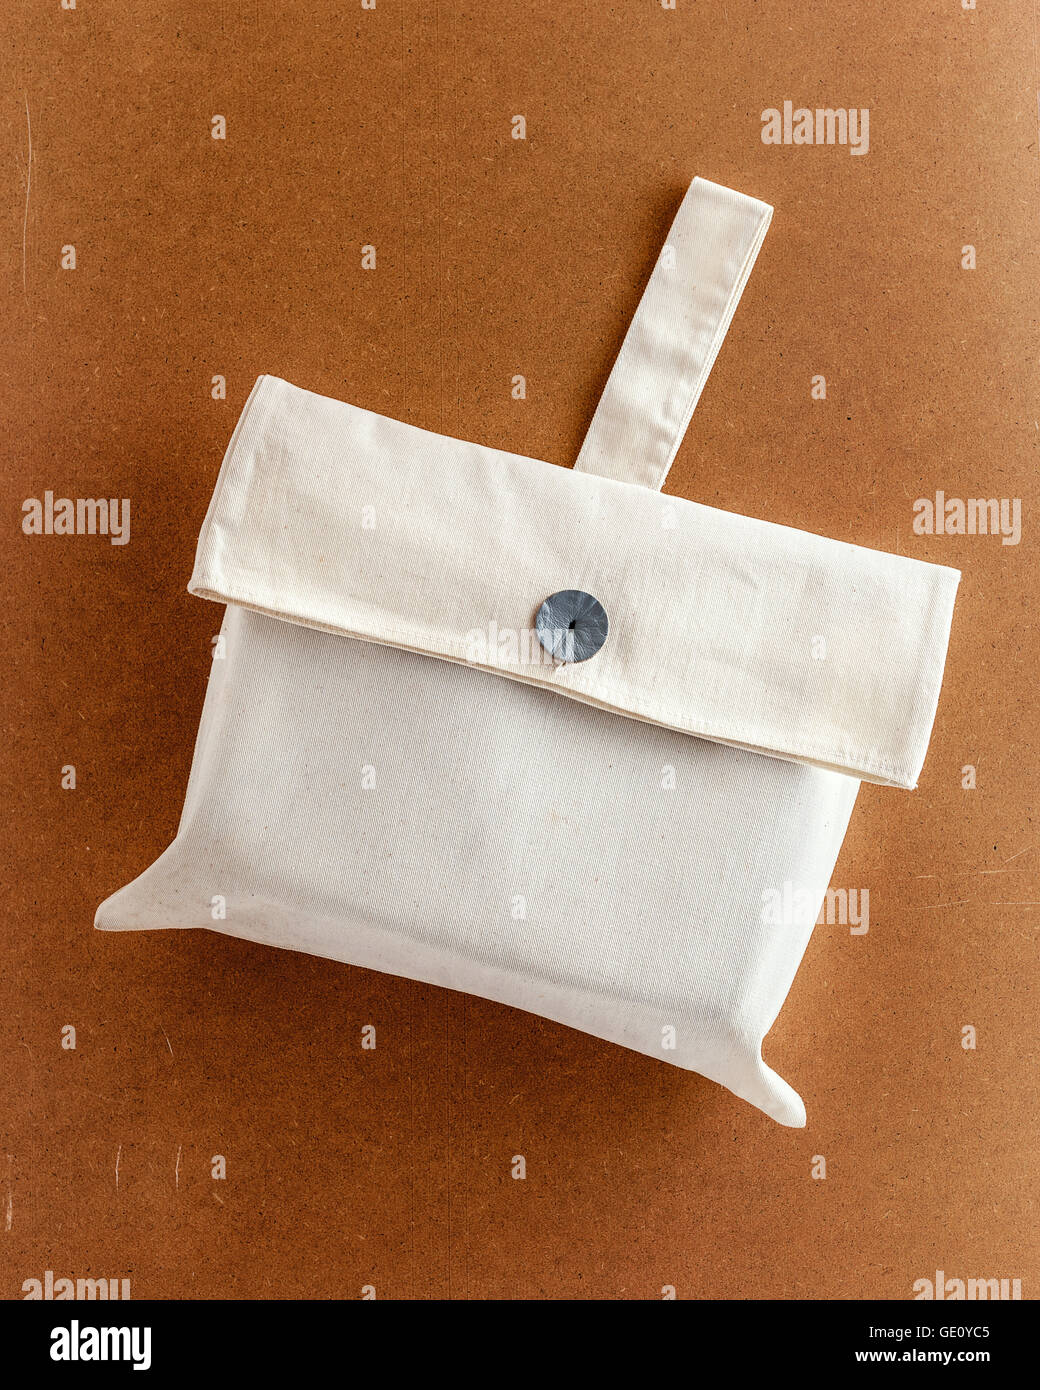 Cubierta de la bolsa de tela con soporte sobre marrón fondo ecológico Foto de stock